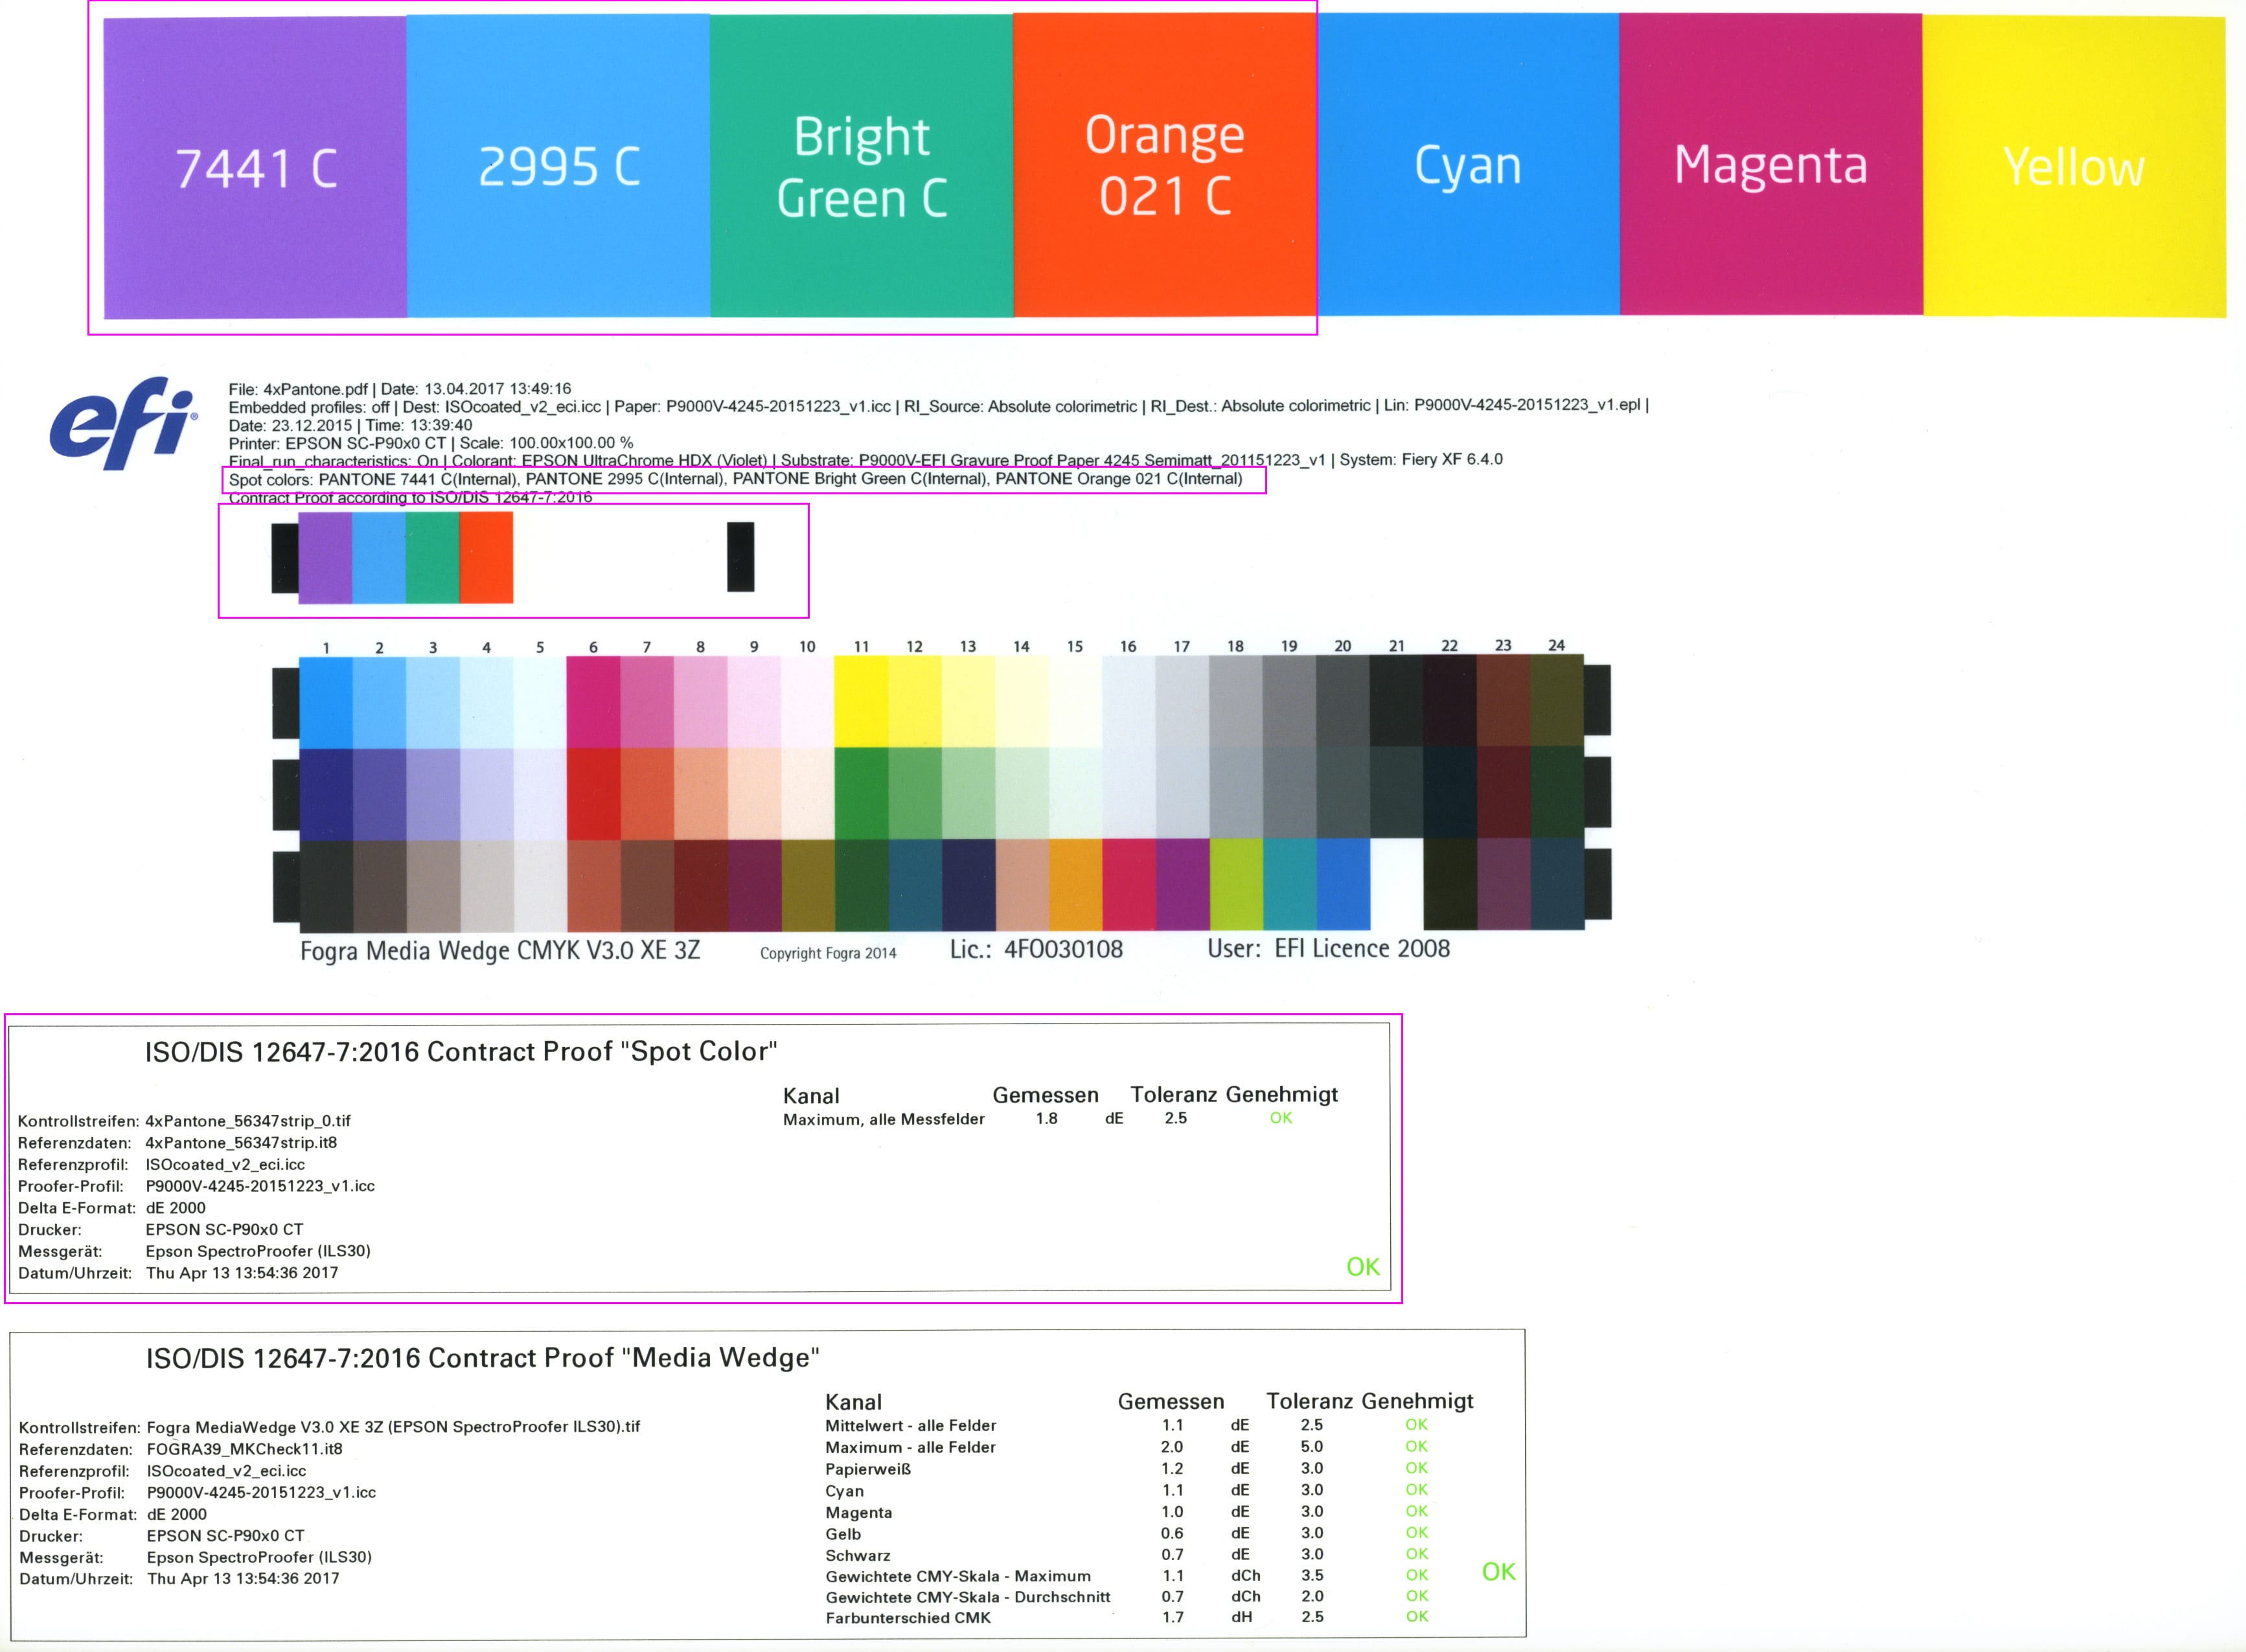 proof.de: Taškinių spalvų laikmenos pleištas / taškinių spalvų laikmenos pleištas su įvertinimu pagal ISO/DIS 12647-7:2016